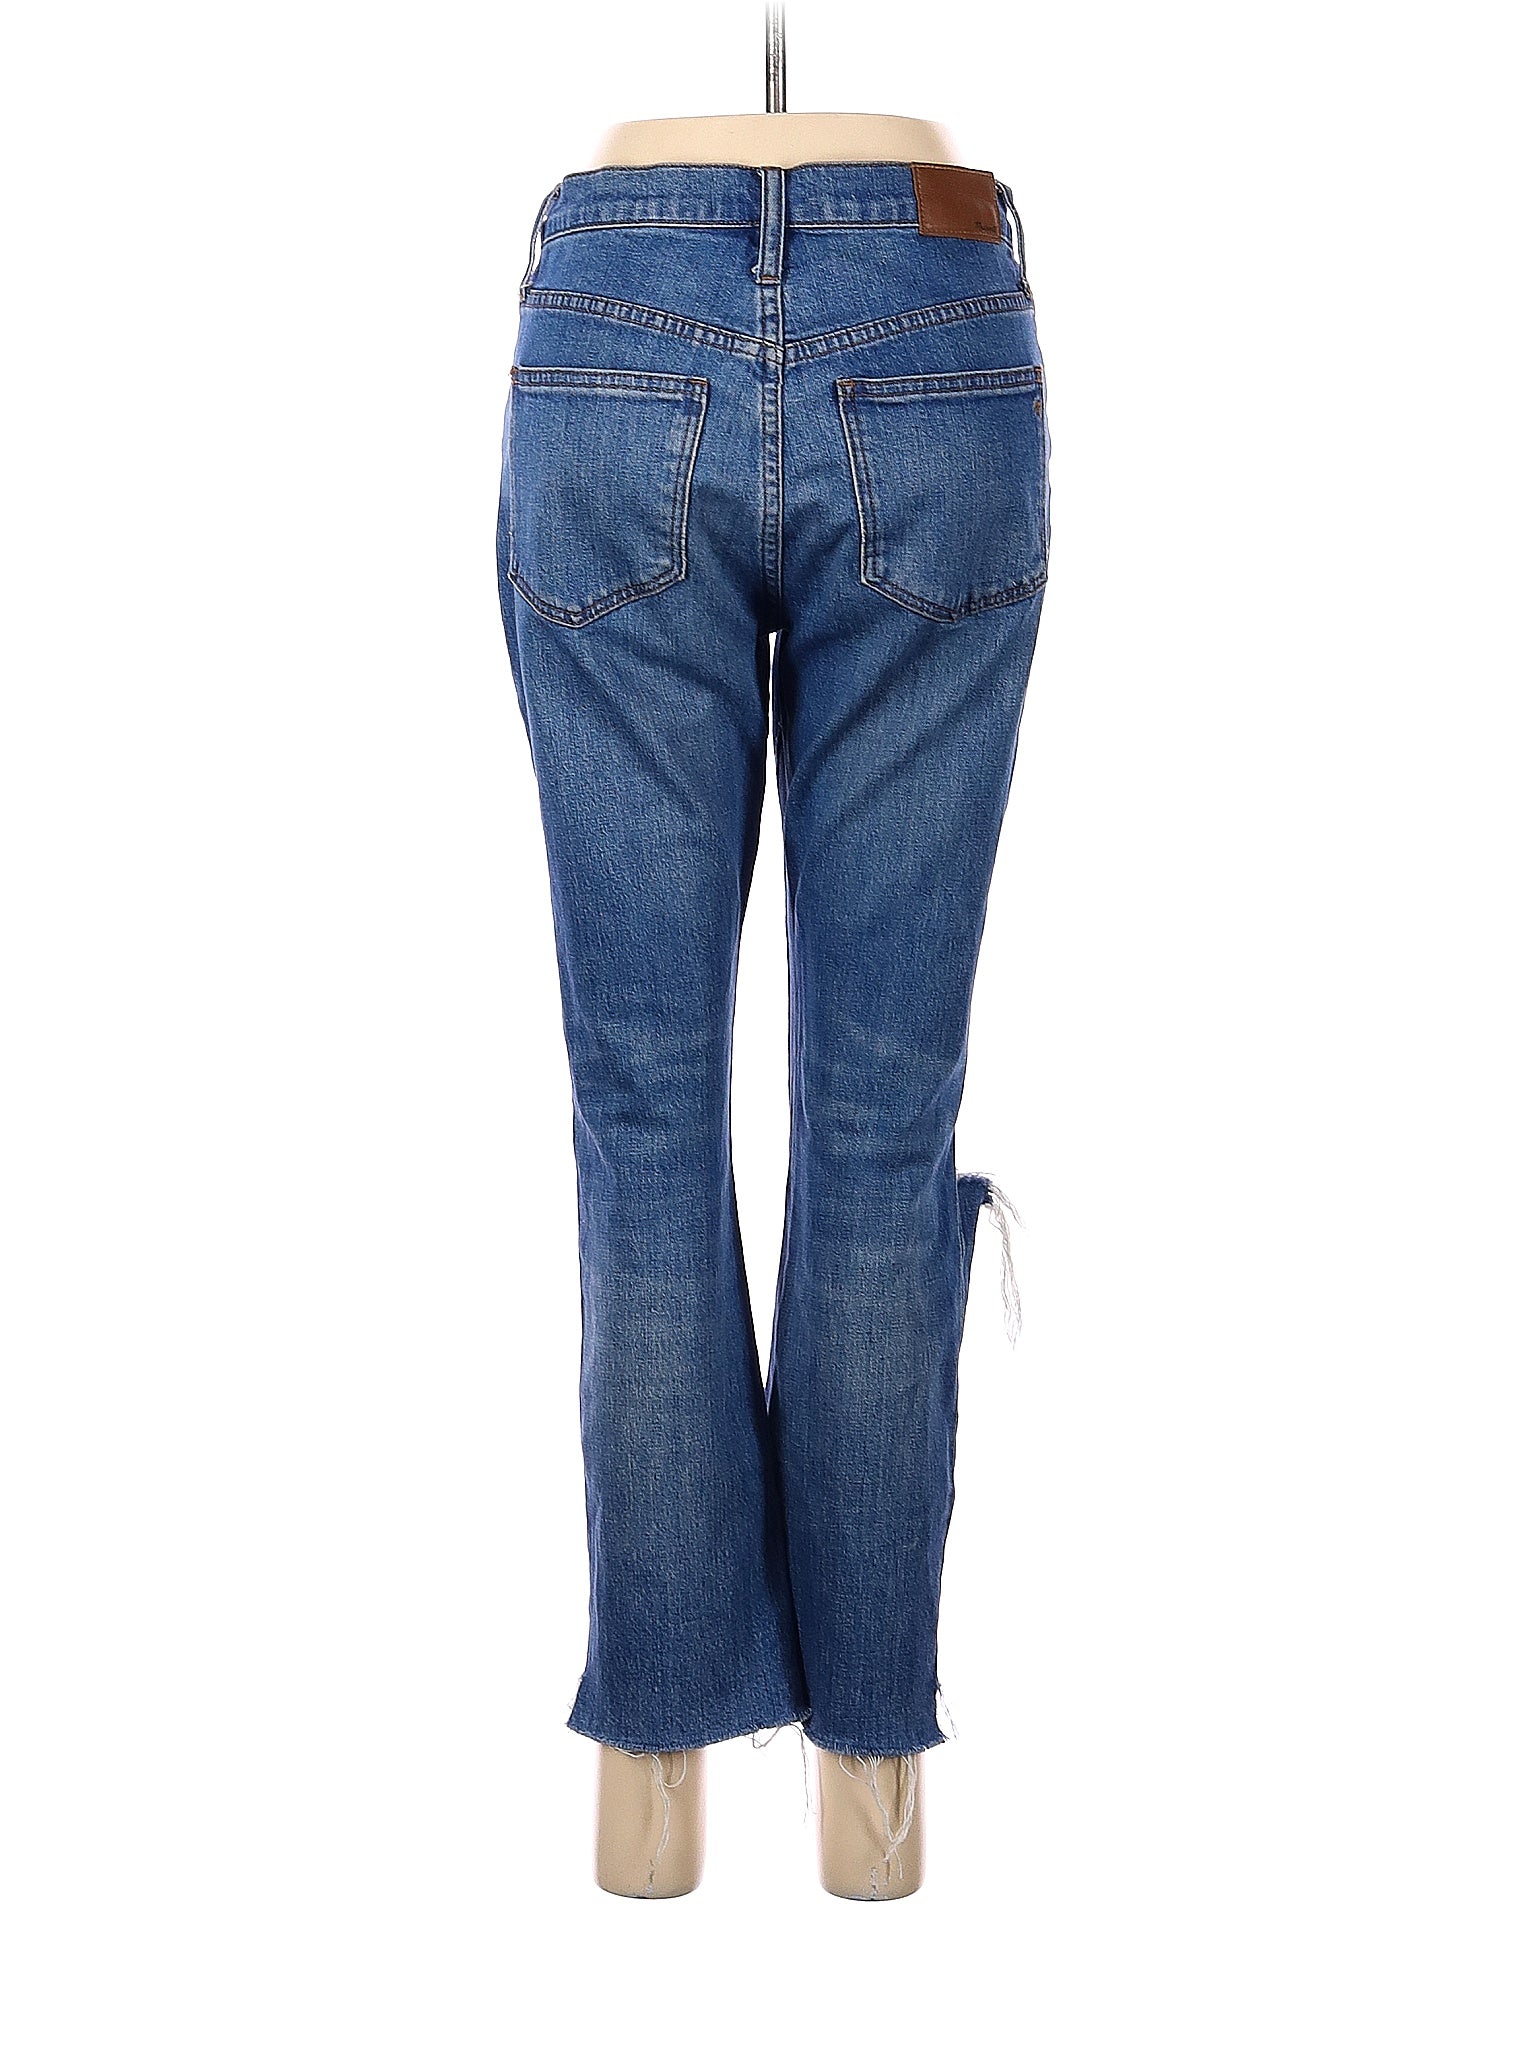 Boyjeans Jeans in Medium Wash waist size - 26